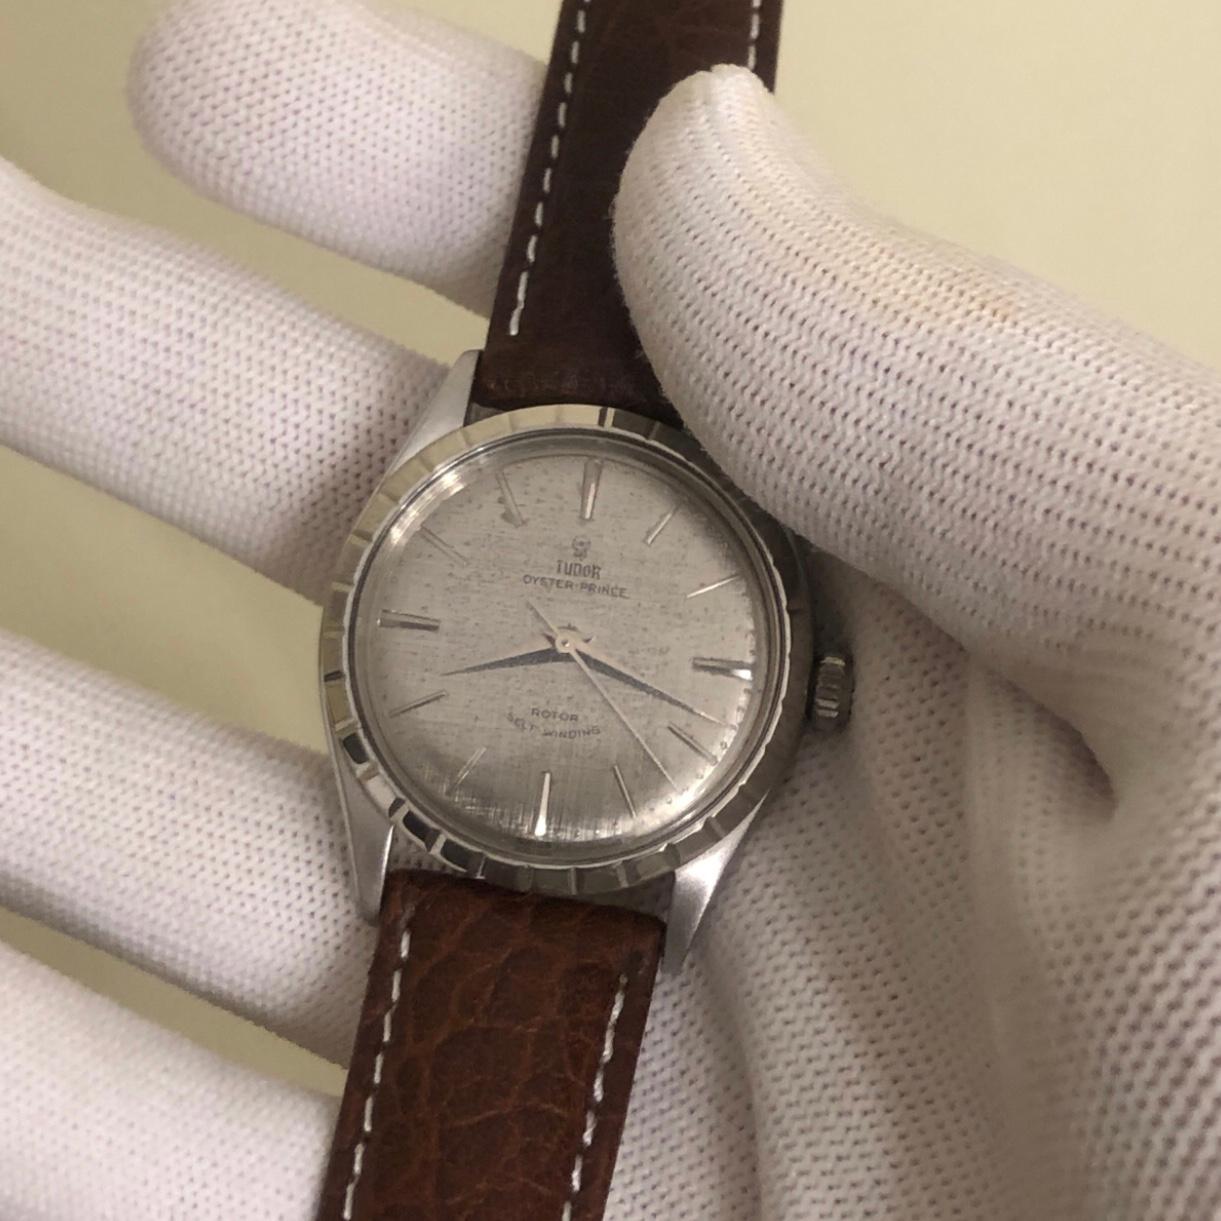 Rolex Tudor Oyster Prince 34mm Edelstahl Vintage Uhr mit Broschüre Papiere. 

Dieser echte Rolex Tudor Zeitmesser verfügt über eine 34mm Edelstahl-Lünette und Rolex Doppelverschluss Krone. 34mm Tudor Oyster-Prince Uhr ist ein Vintage 7965 Modell mit